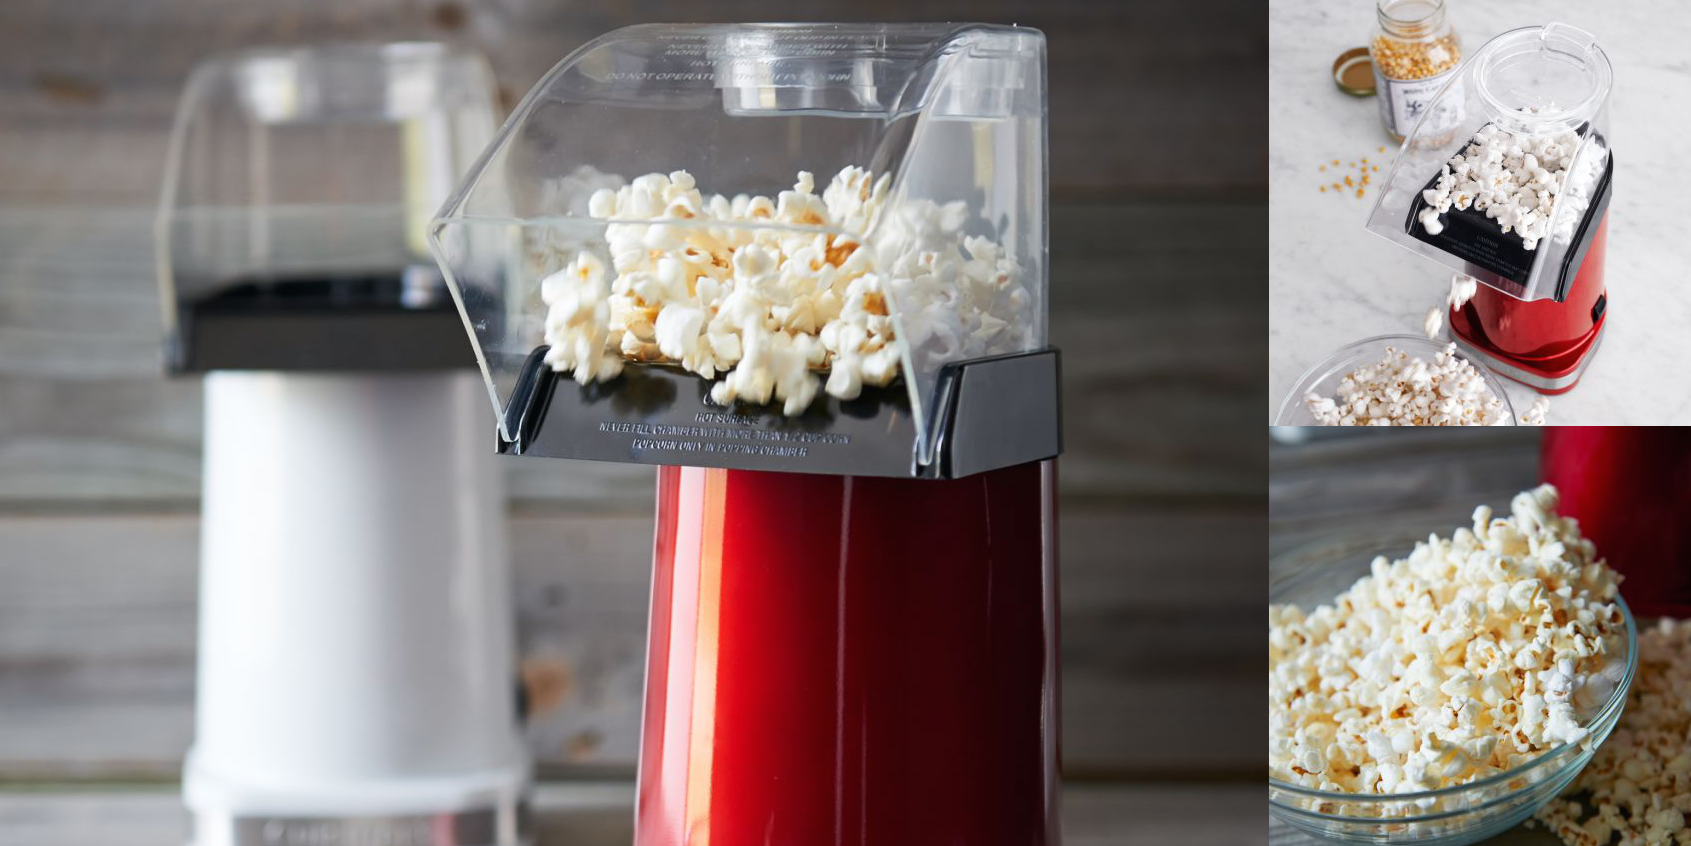 Home: Cuisinart Popcorn Maker $28 (Reg. $40), more